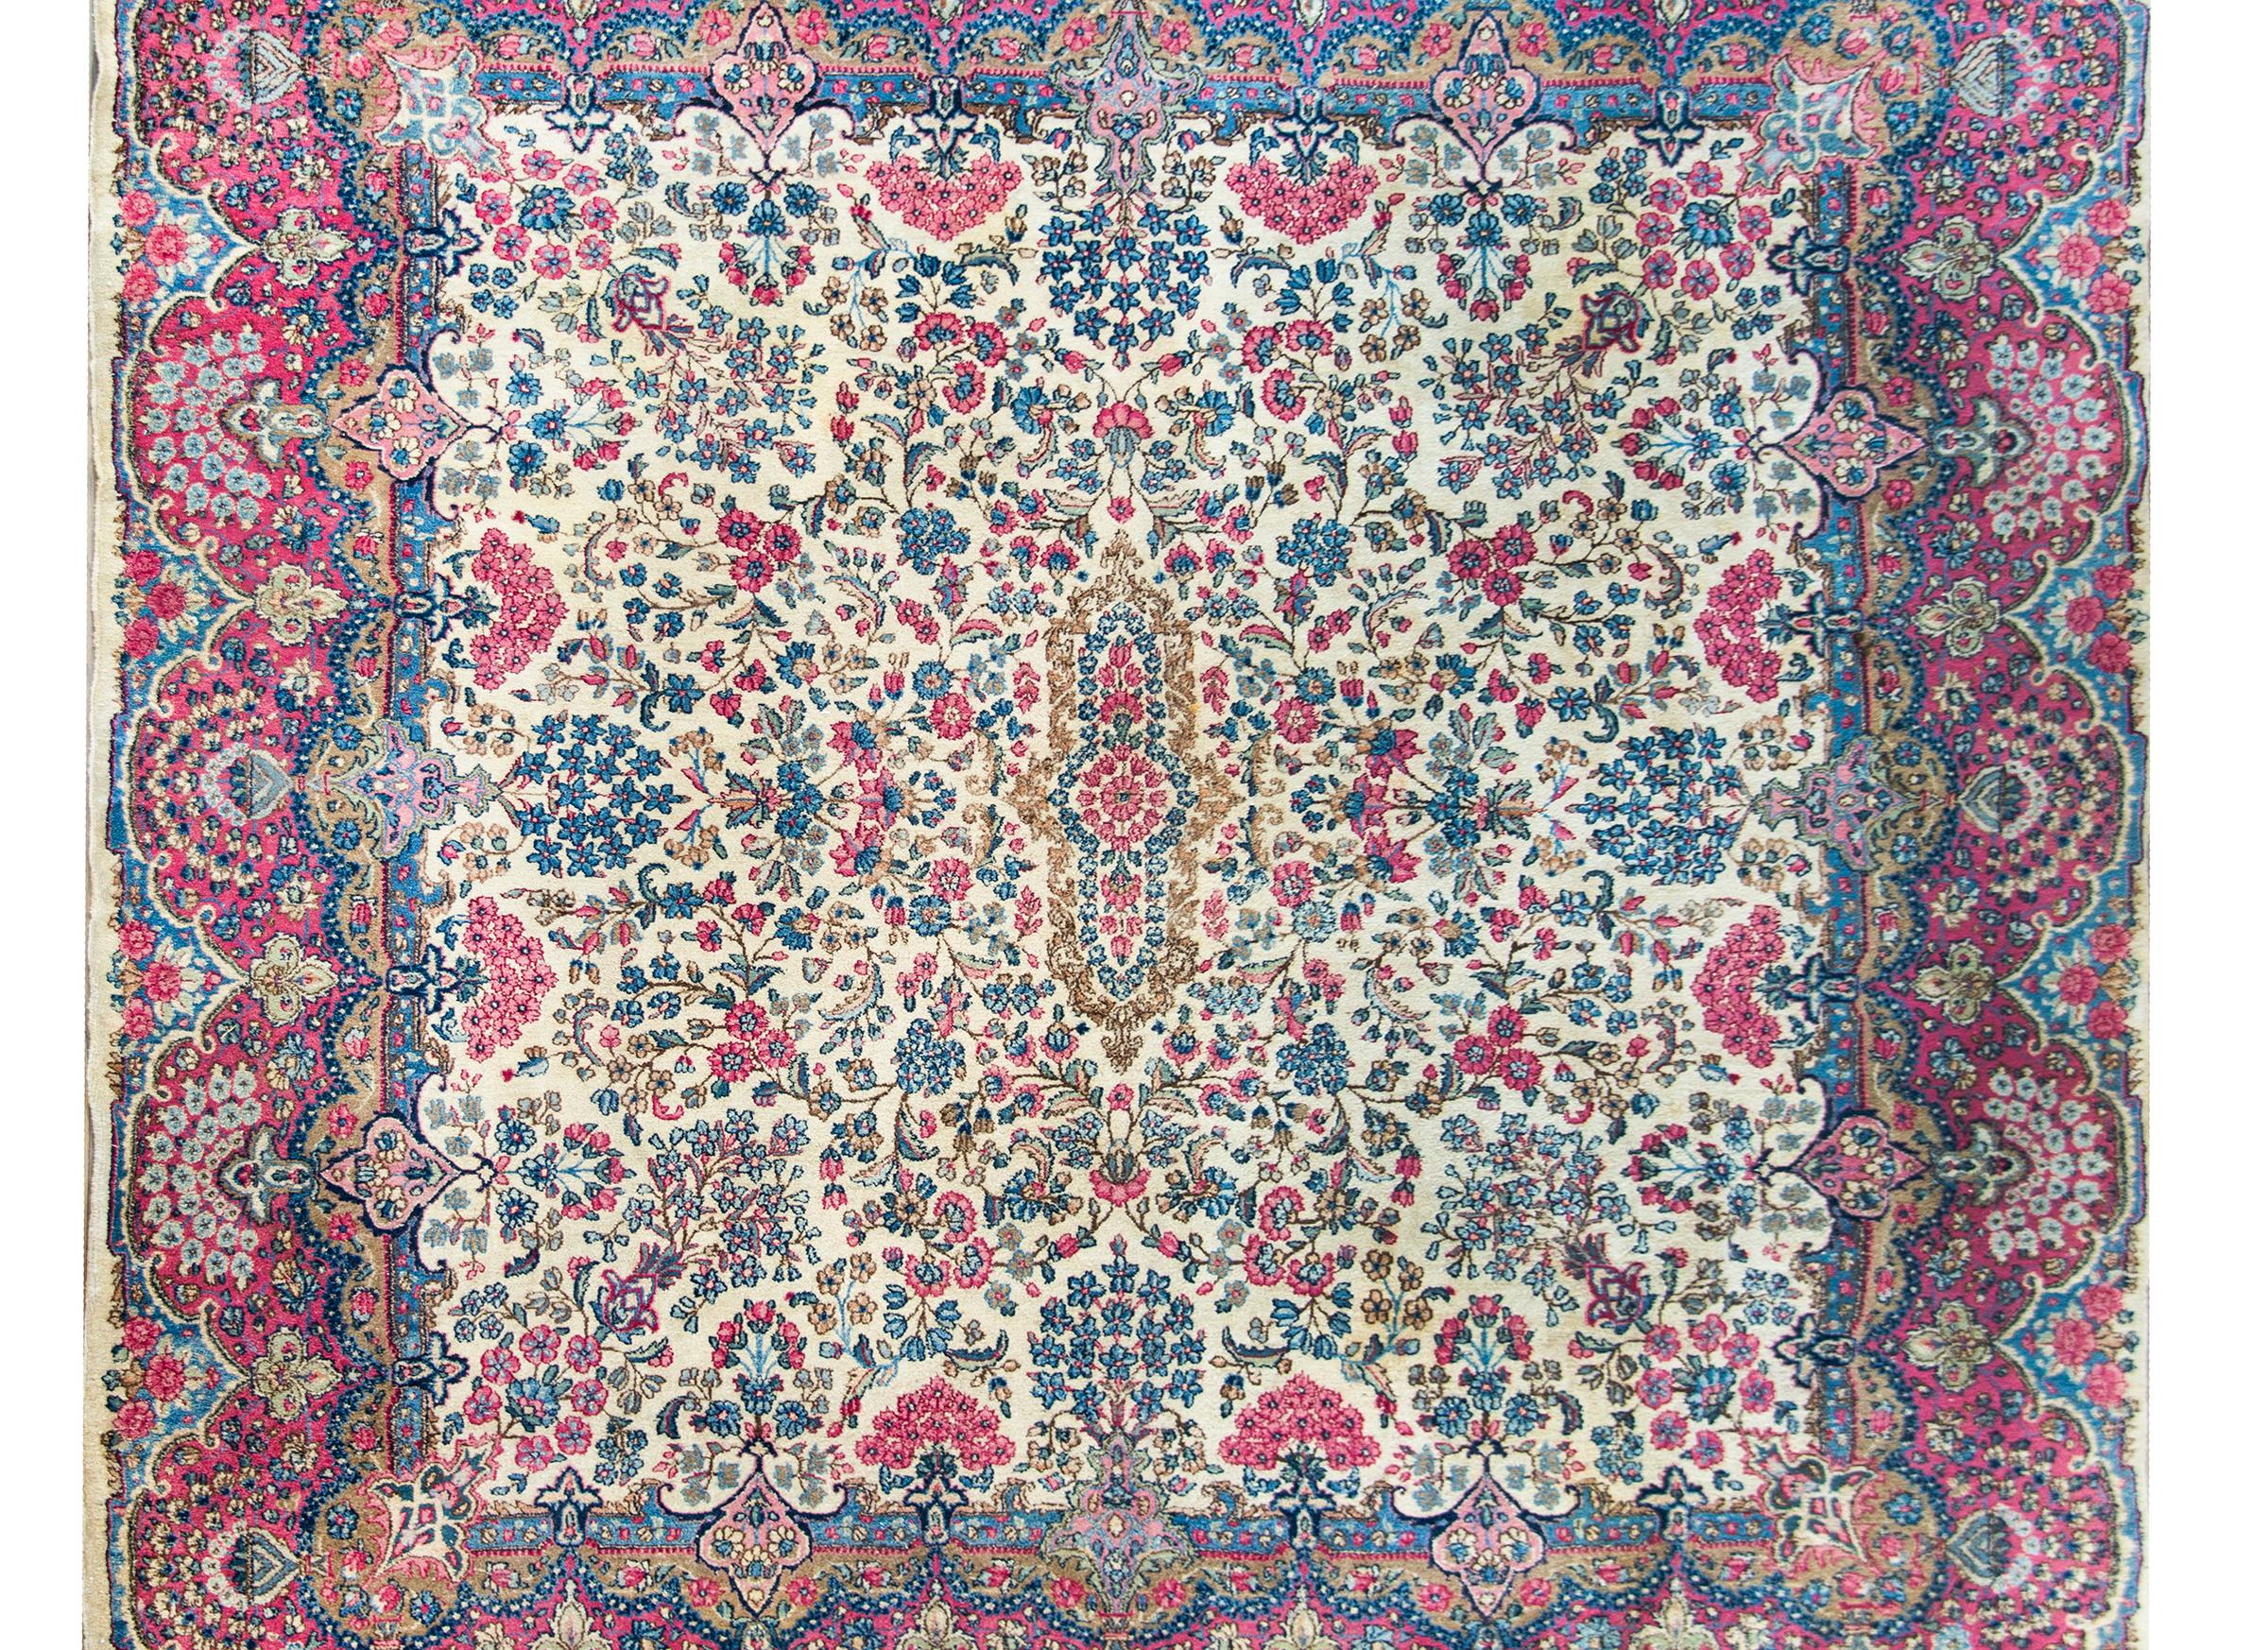 Ein atemberaubender persischer Kirman-Teppich aus dem frühen 20. Jahrhundert mit einem schönen, gespiegelten Blumenmuster, das unzählige, in Rosa-, Indigo- und Grüntönen gewebte Blumenbüschel enthält, die vor einem cremefarbenen Hintergrund stehen